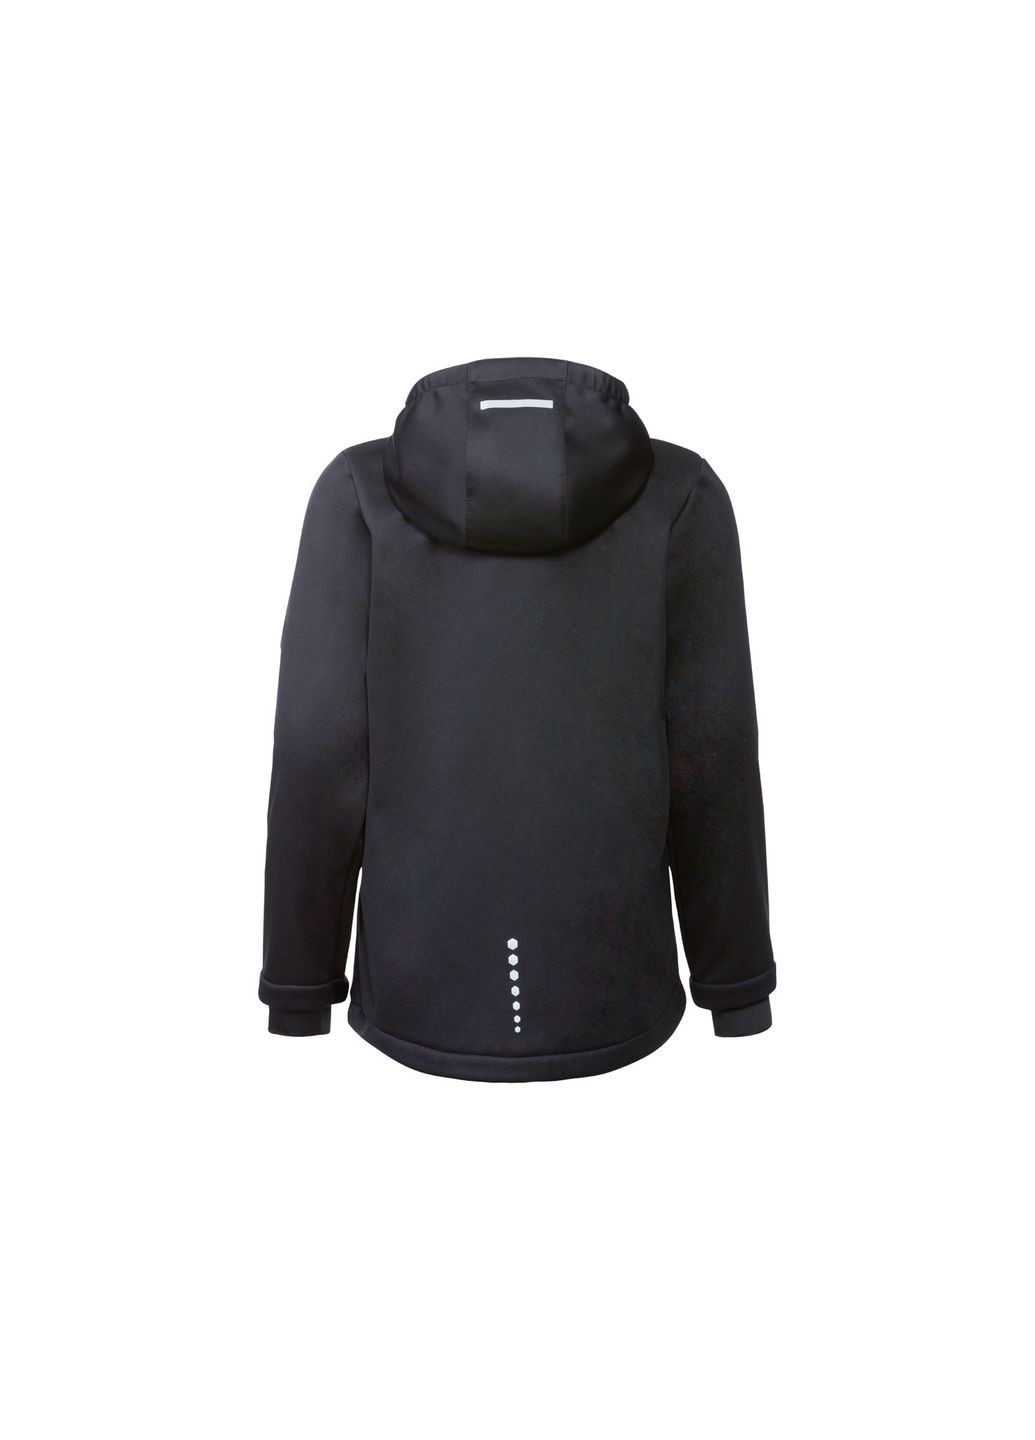 Черная демисезонная куртка softshell водоотталкивающая и ветрозащитная для девочки 358145 Crivit